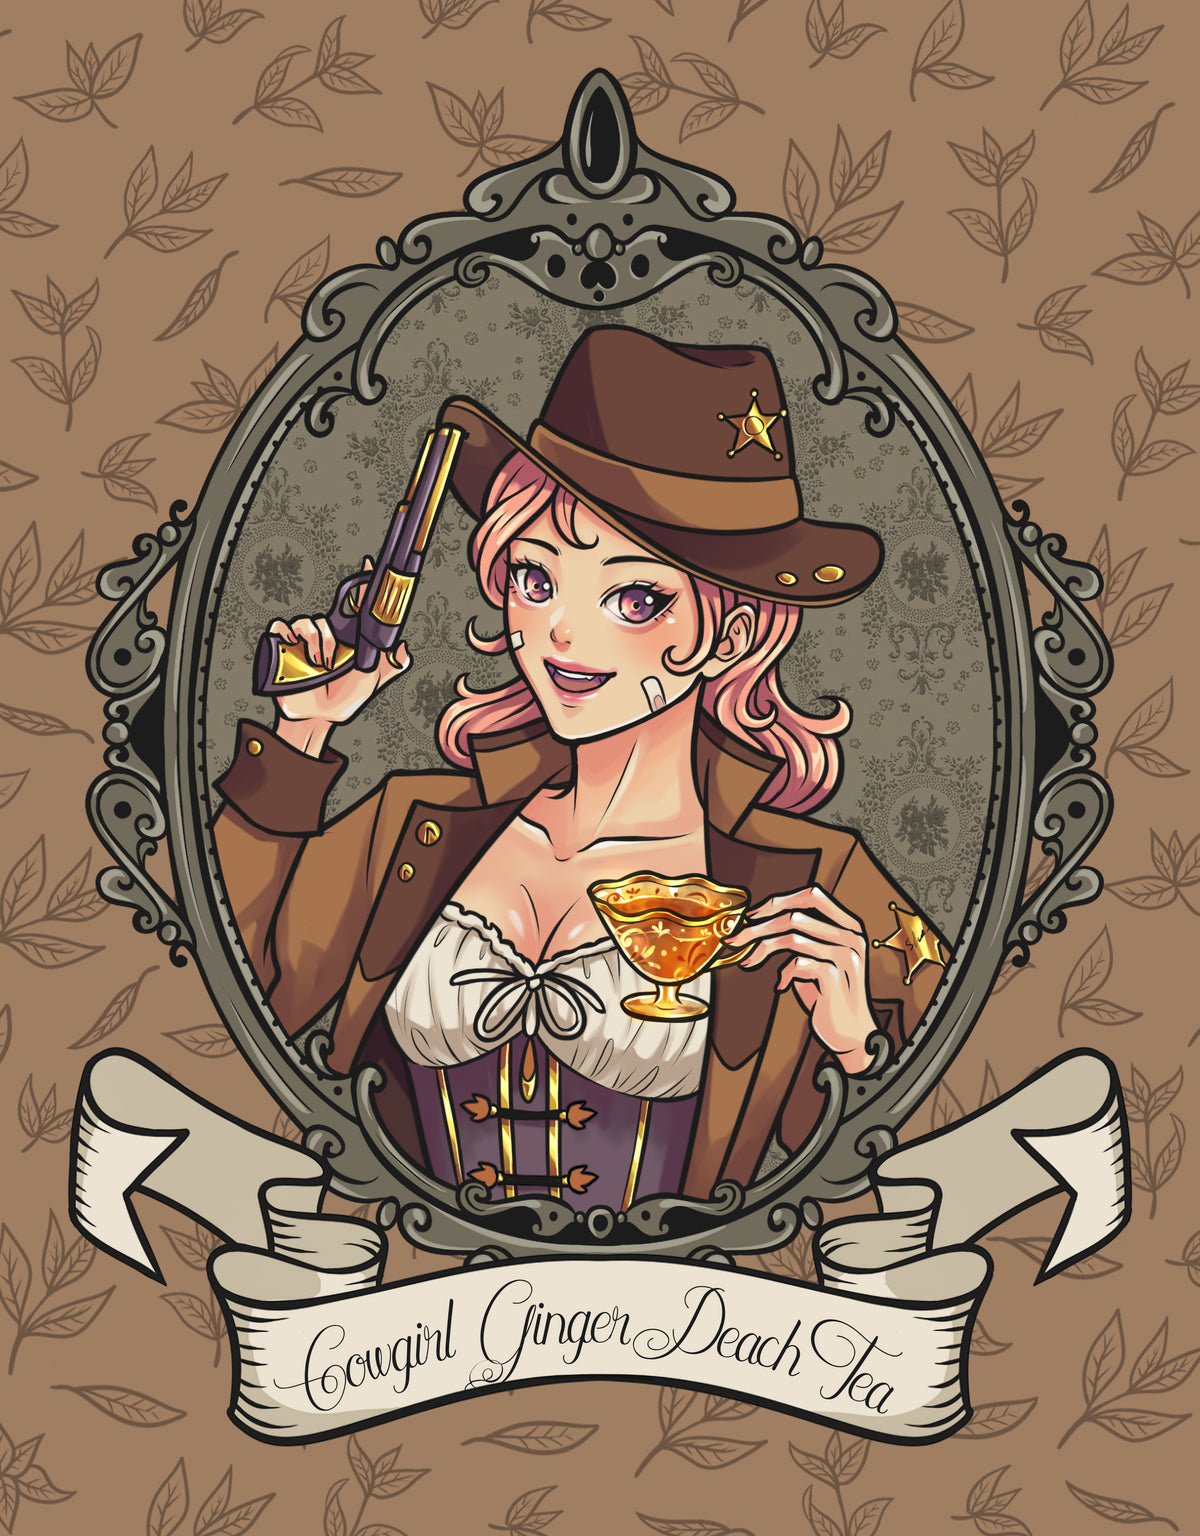 Cowgirl Ginger Peach Tea